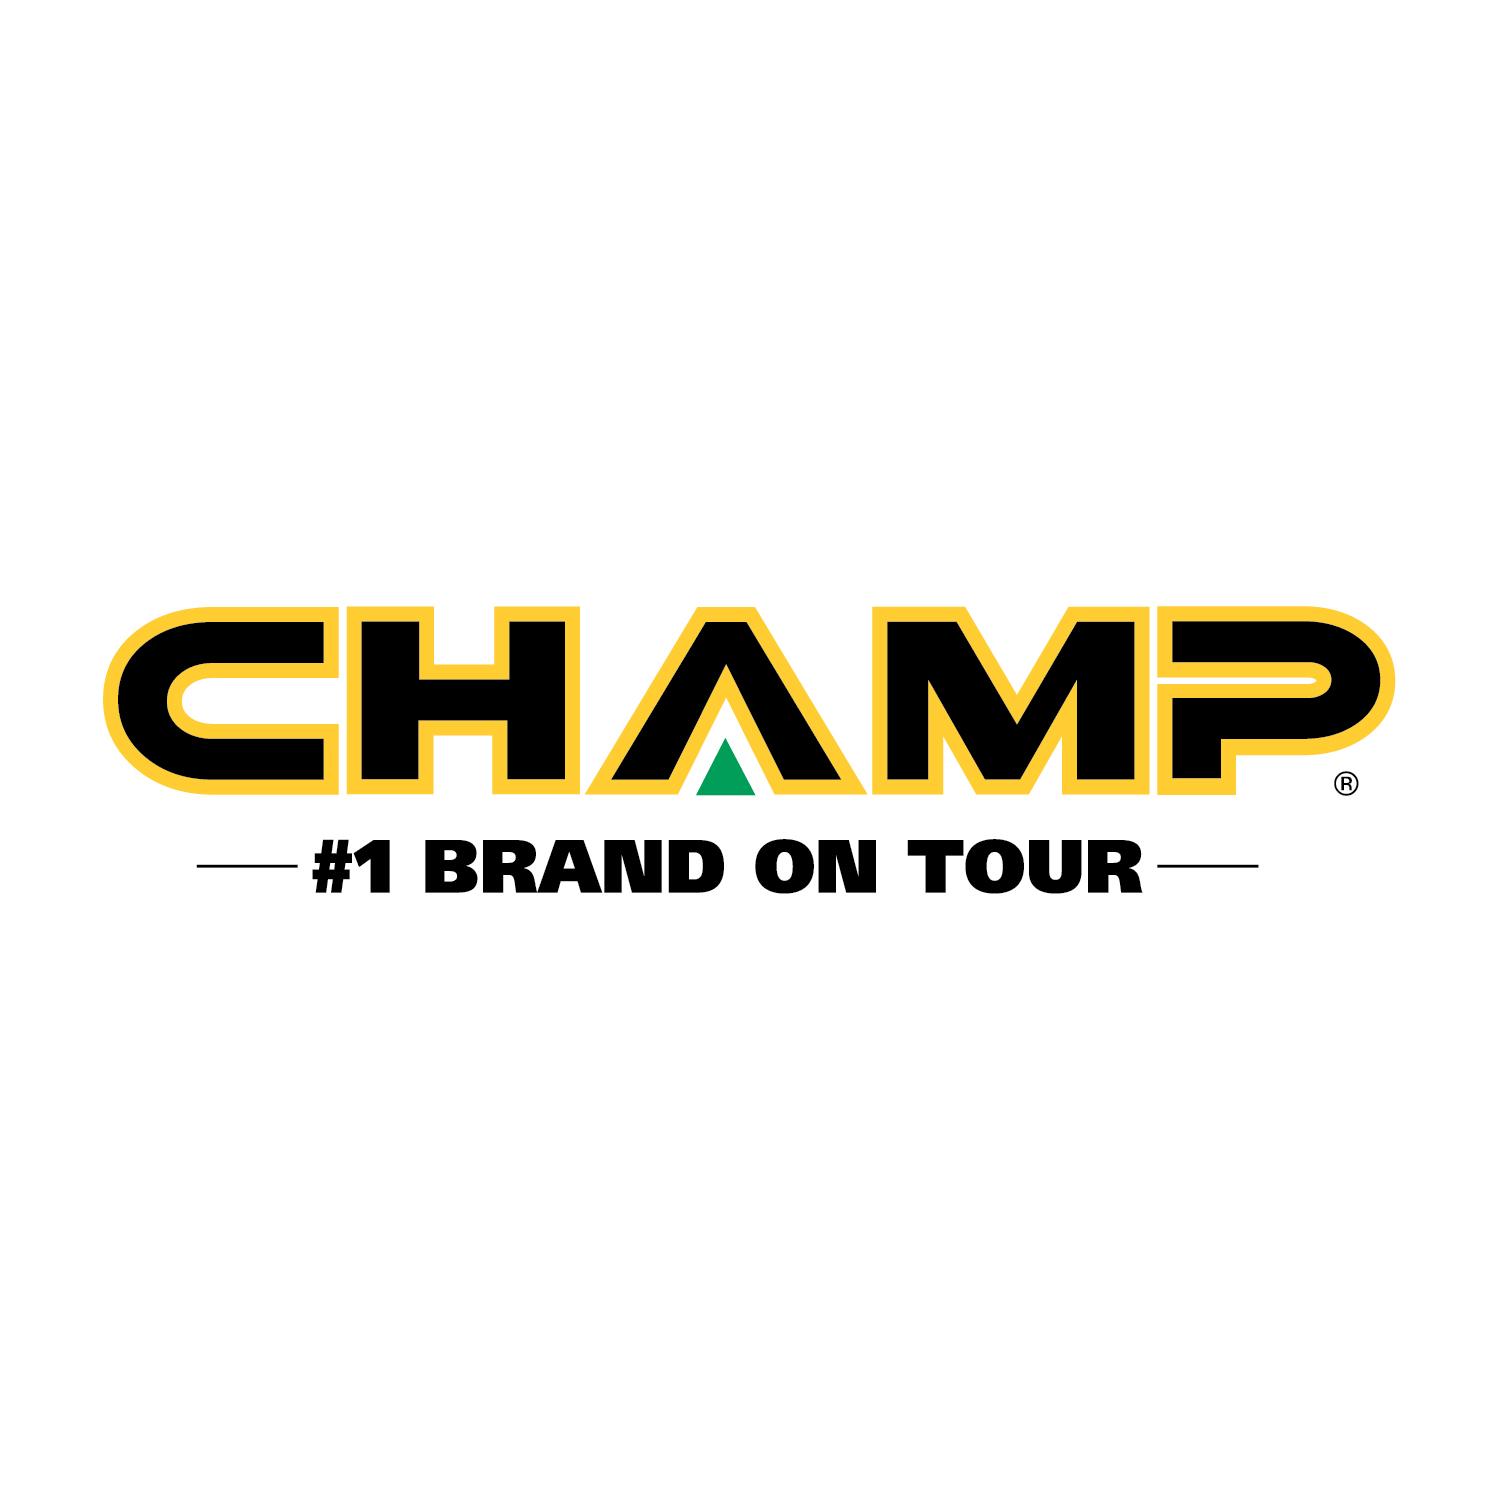 Champ Logo - Champ Celebrates 85th Anniversary With Company Rebrand - Haggin Oaks